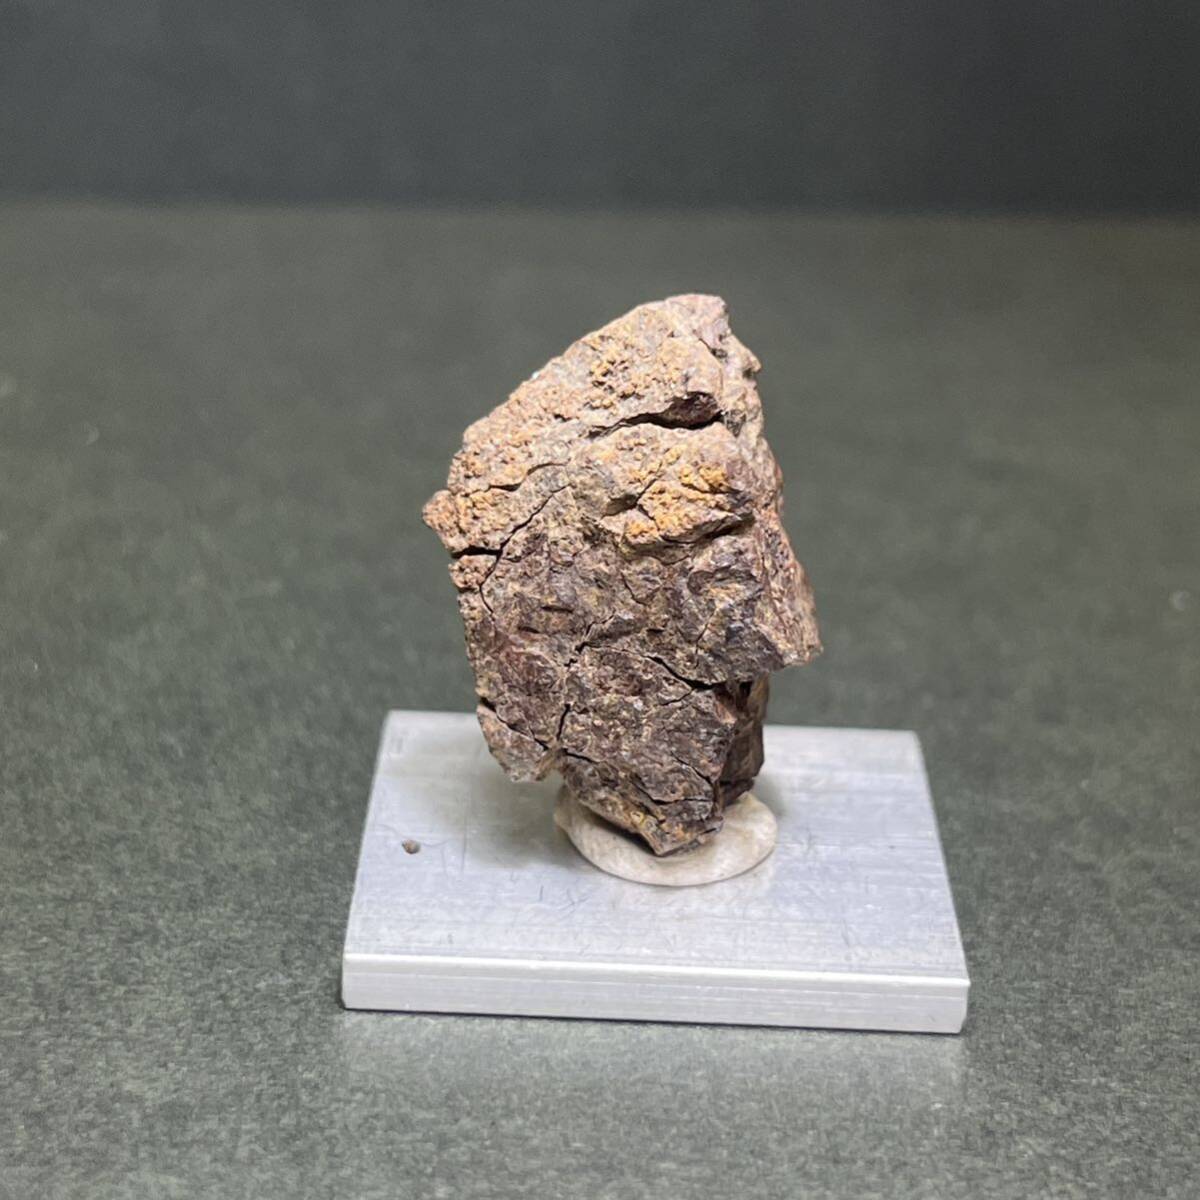  редкий *va cam L ta метеорит камень металлический метеорит mesositela трубочник teo свет метеорит магазин meteor s*240522